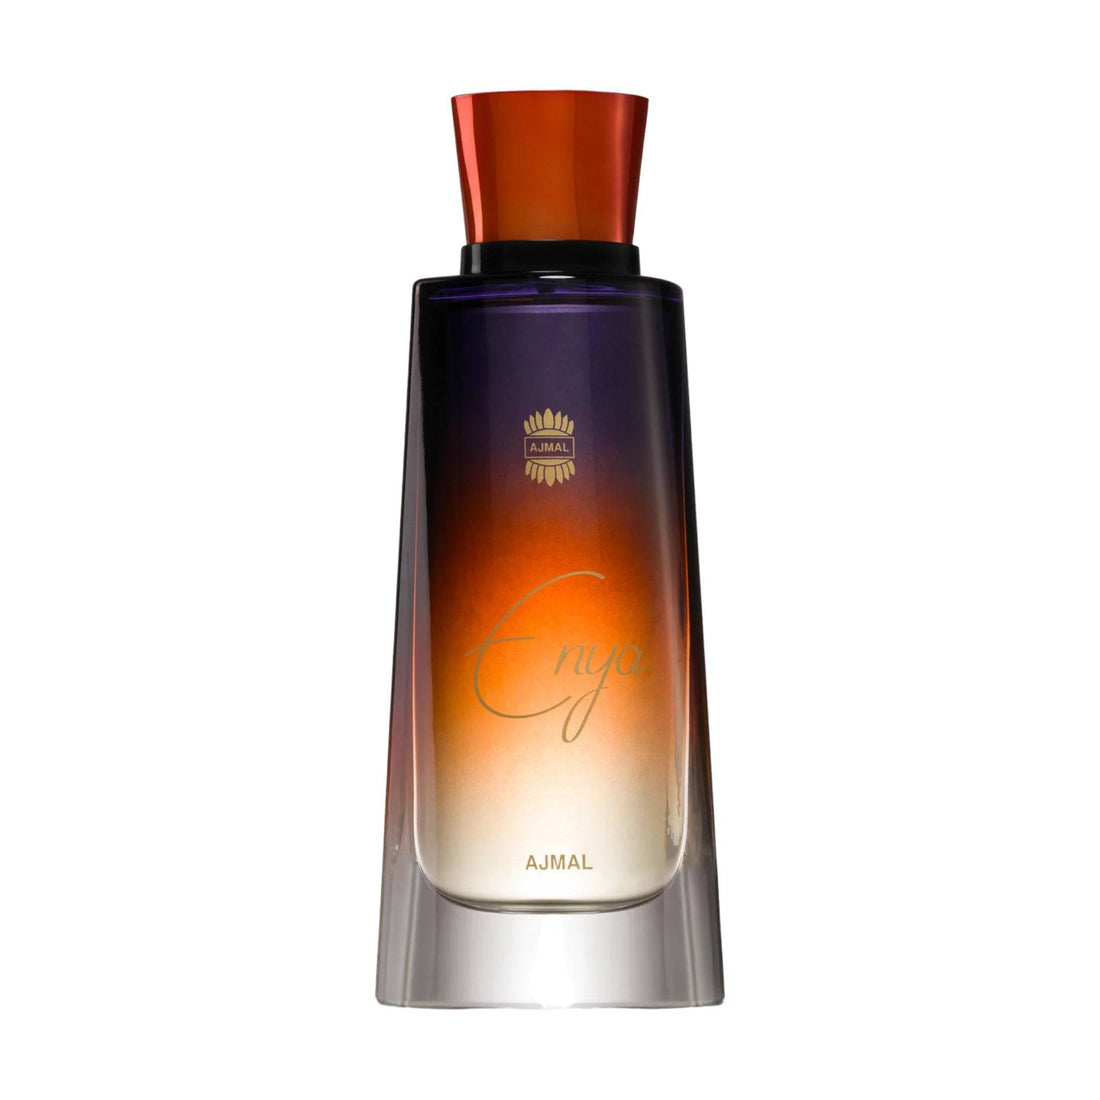 Chic 75ml bottle of Ajmal Enya Eau de Parfum, symbolizing its timeless elegance and natural femininity.